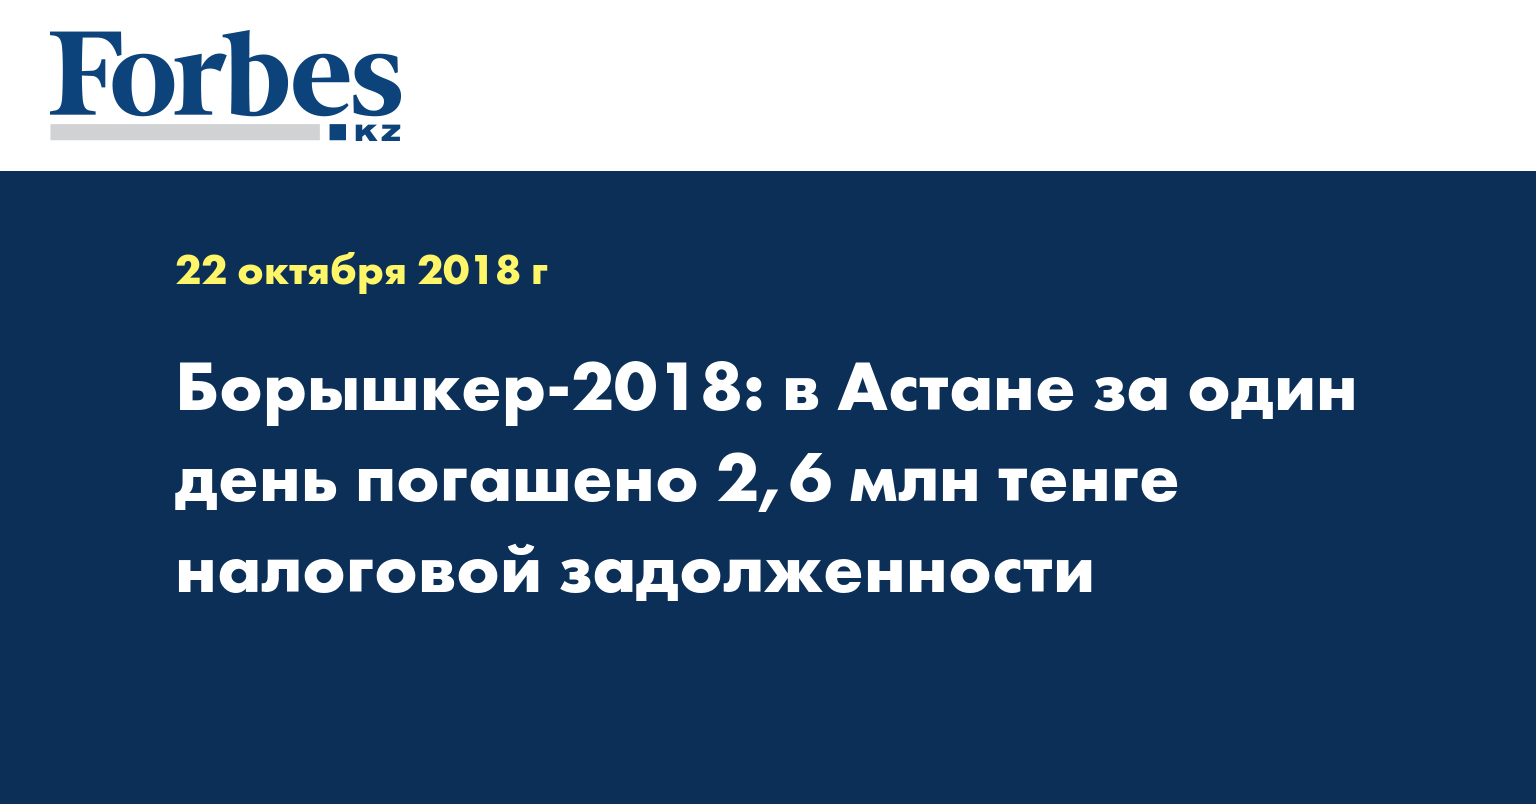 Борышкер-2018: в Астане за один день погашено 2,6 млн тенге налоговой задолженности